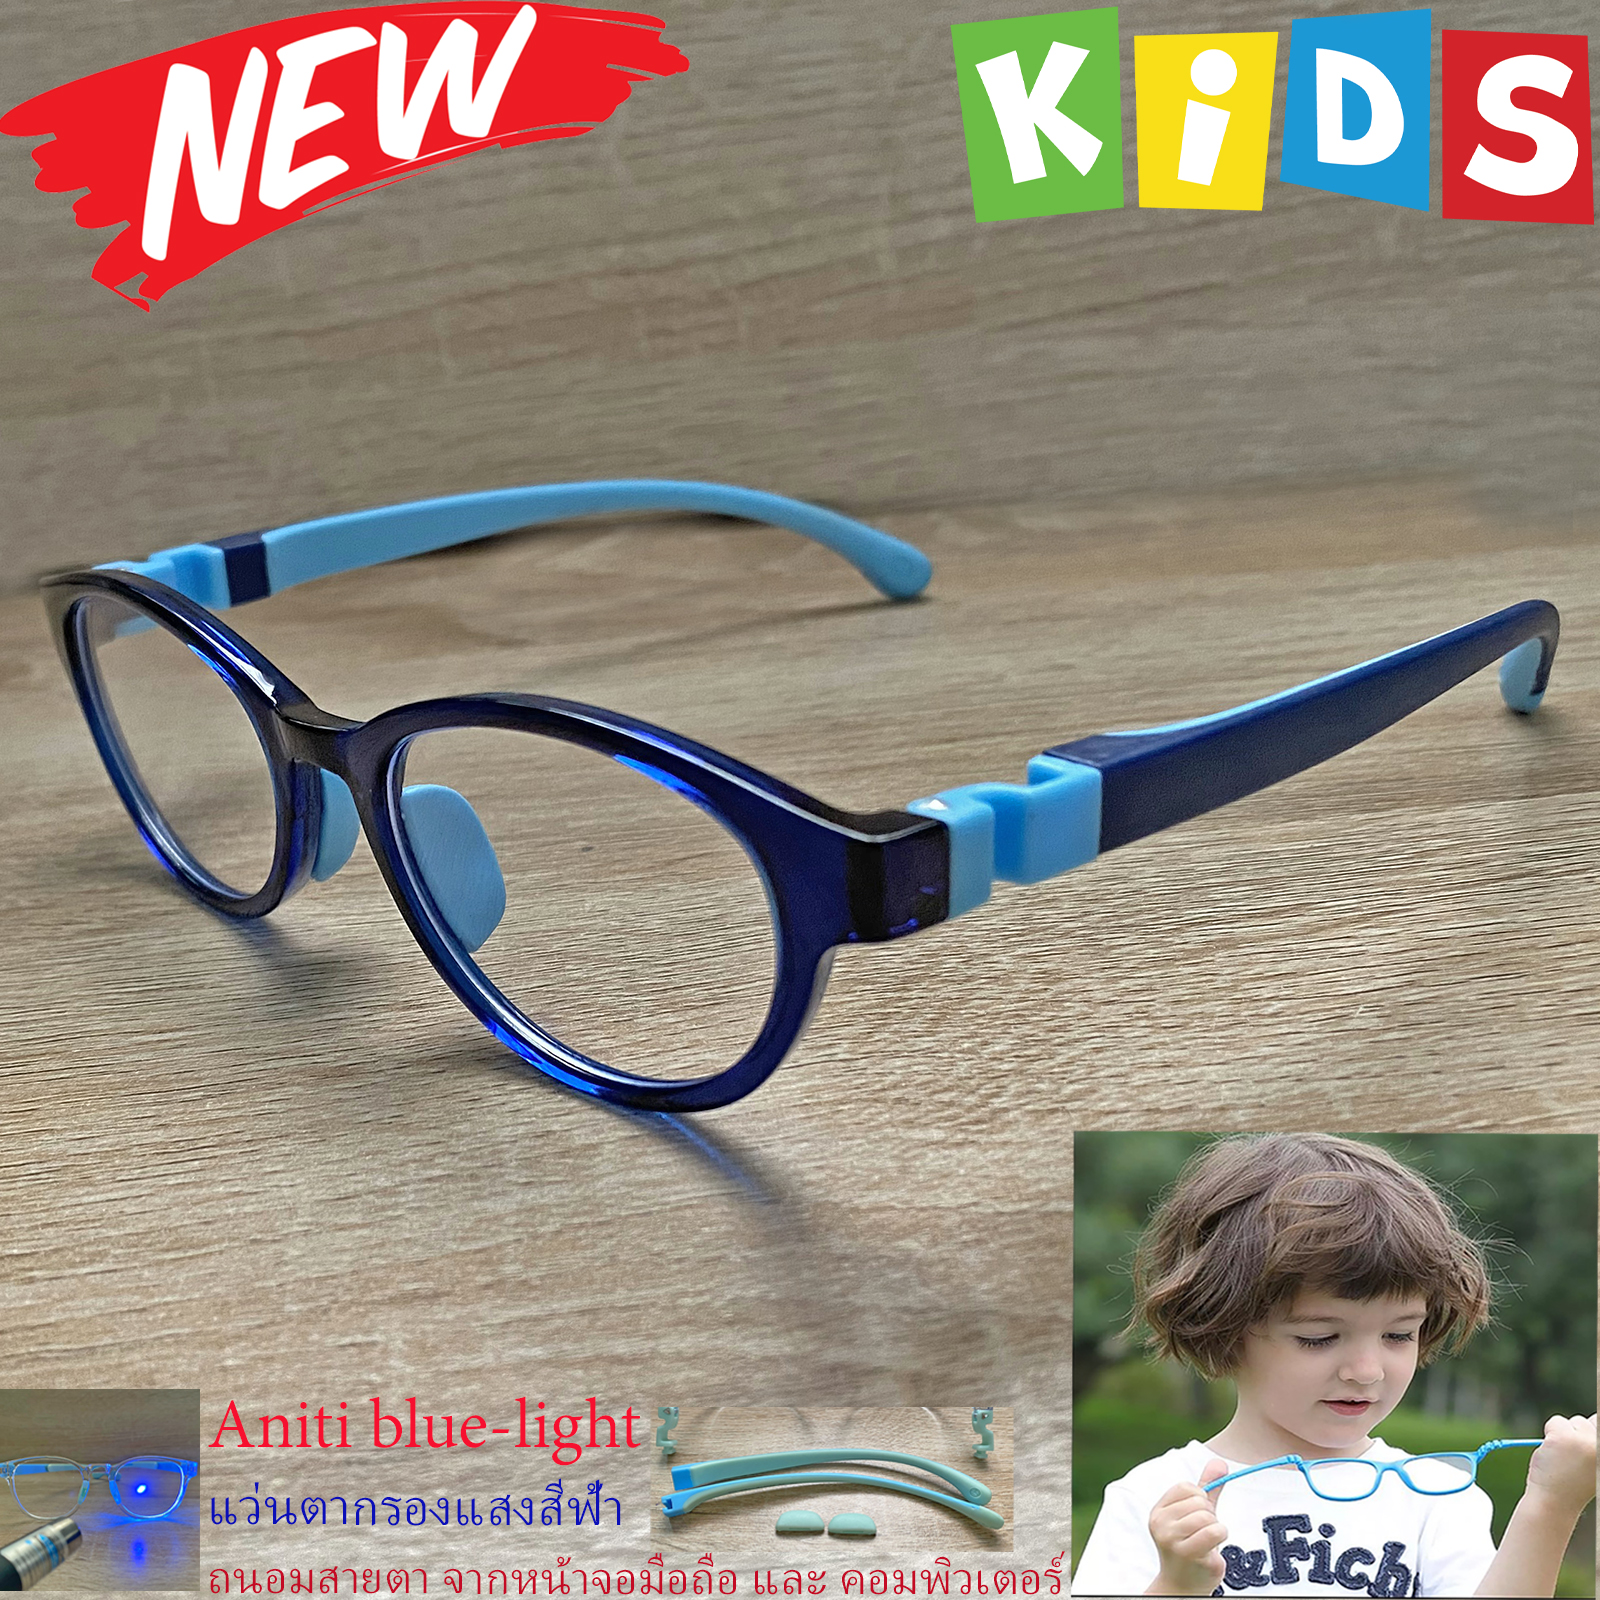 กรอบแว่นตาเด็ก กรองแสง สีฟ้า blue block แว่นเด็ก บลูบล็อค รุ่น 05 สีน้ำเงิน ขาข้อต่อยืดหยุ่น ถอดขาเปลี่ยนได้ วัสดุTR90 เหมาะสำหรับเลนส์สายตา